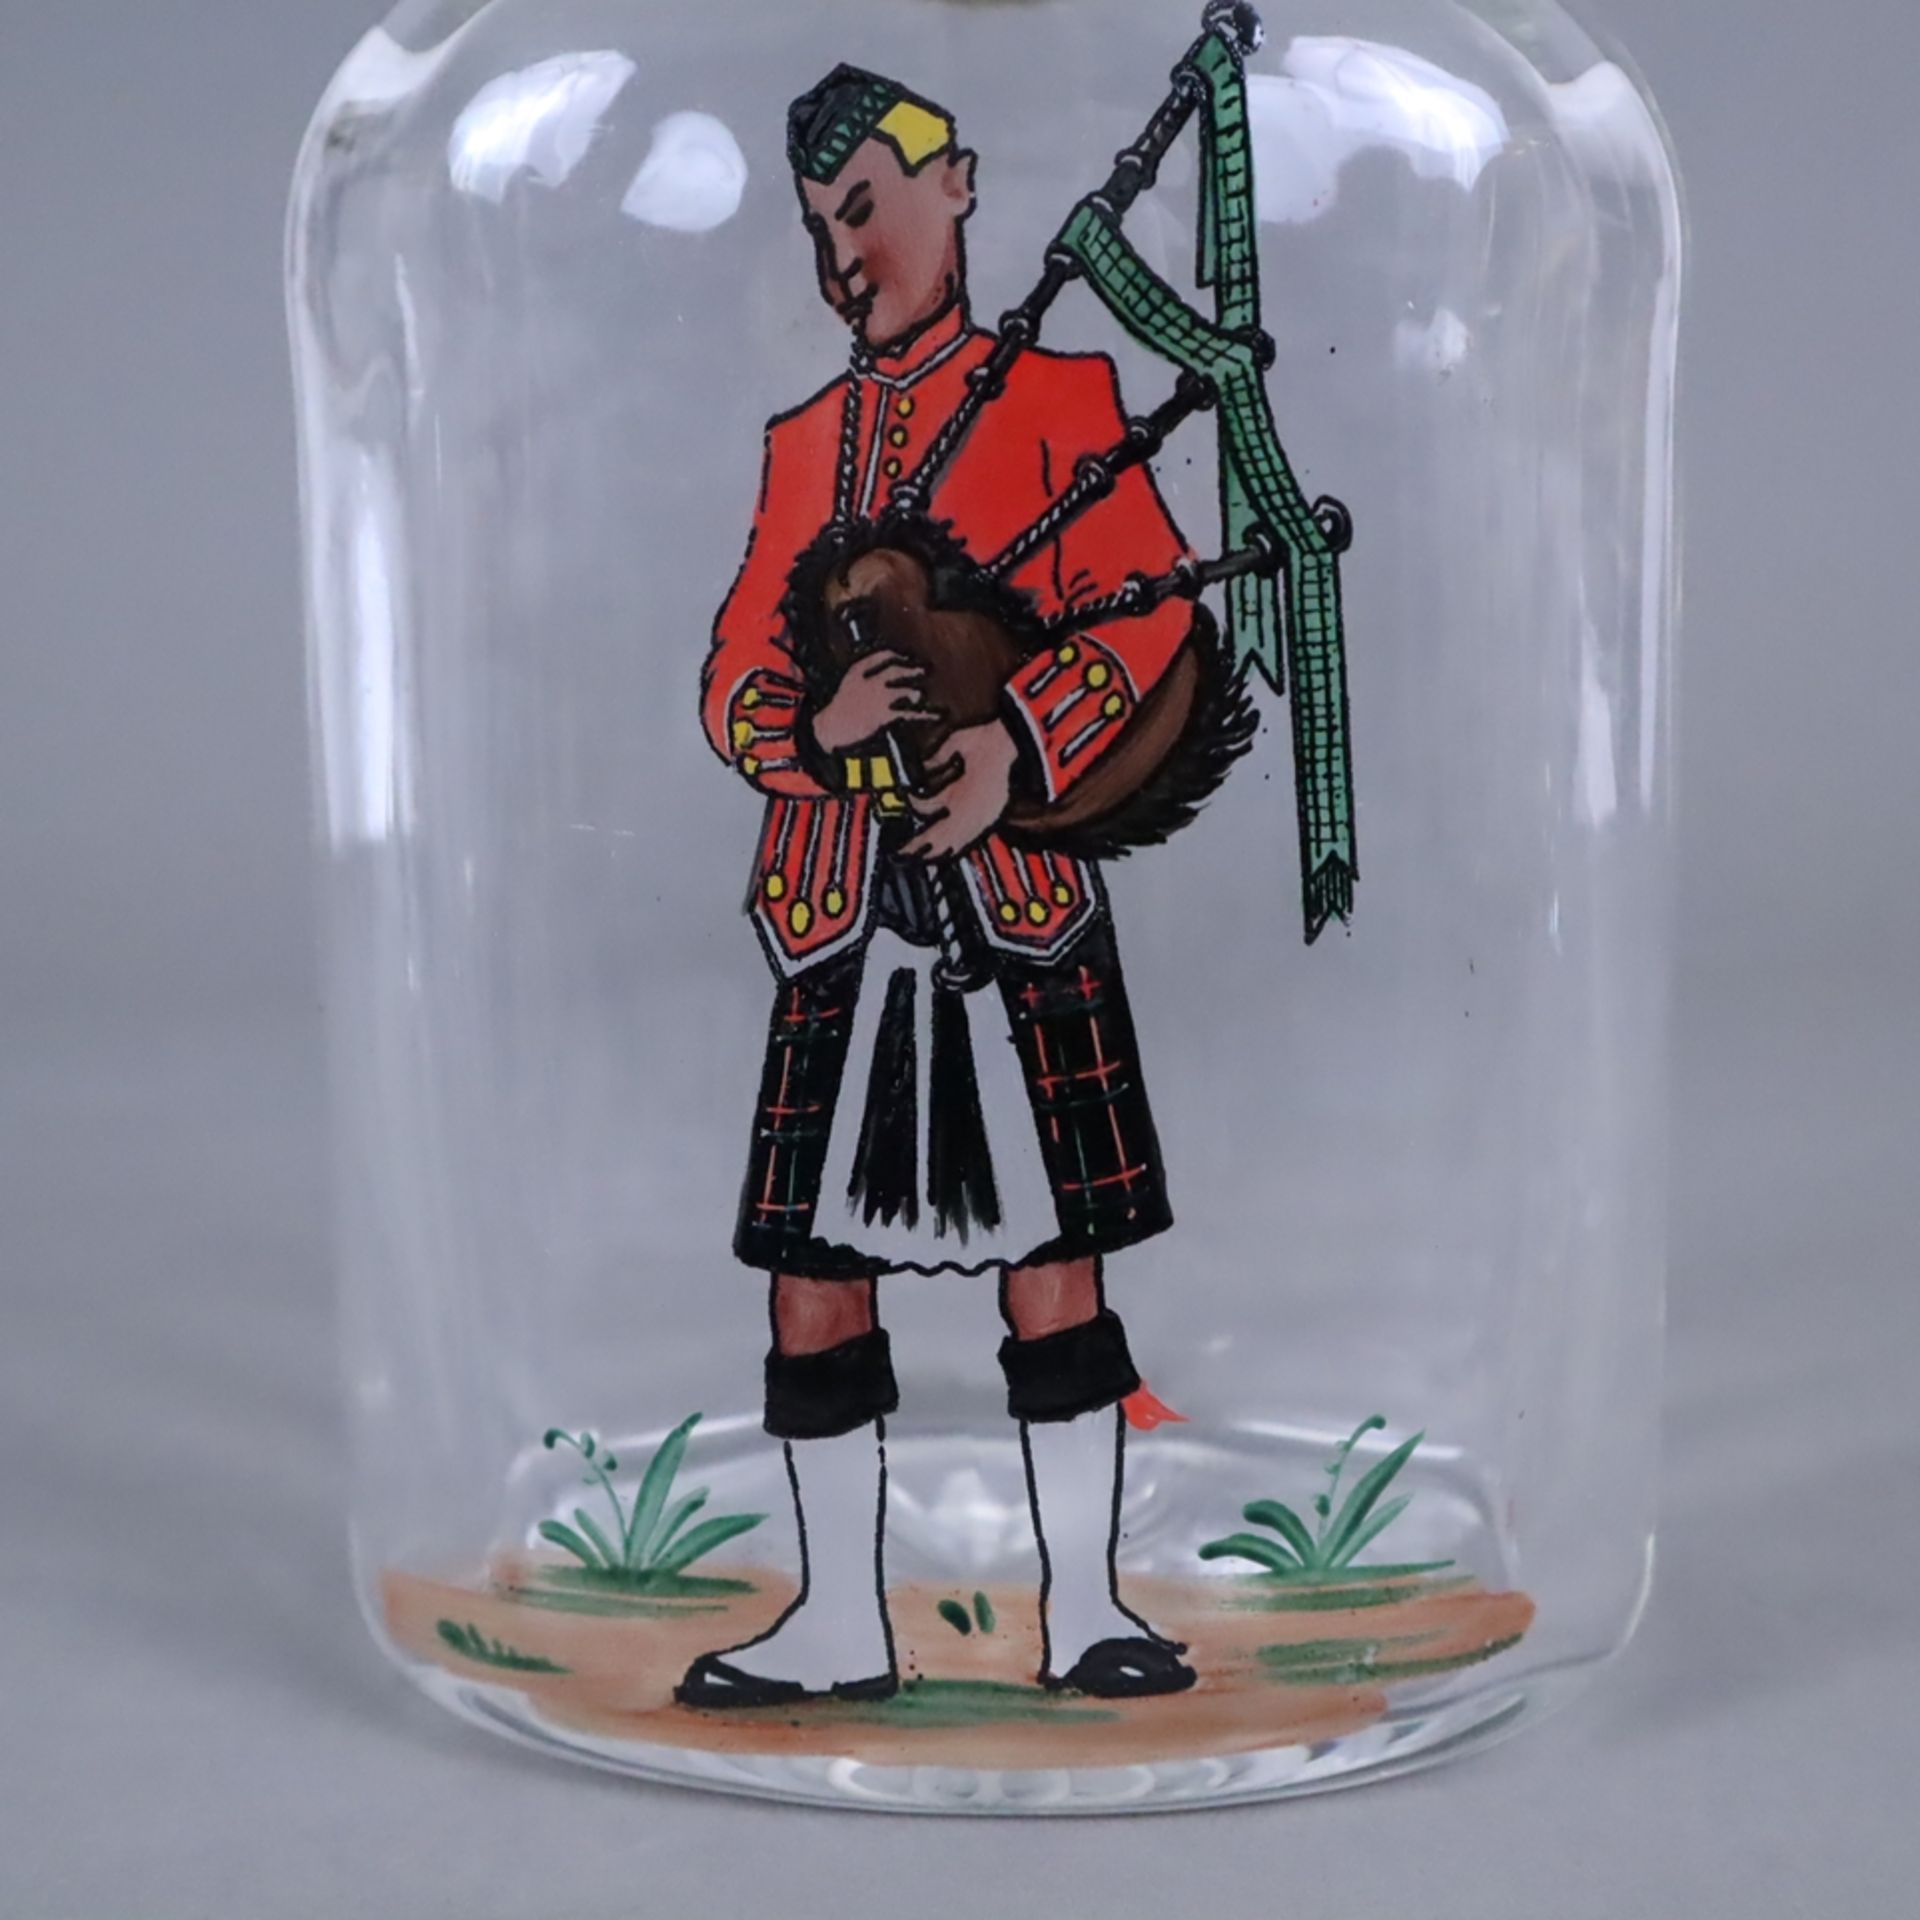 Whiskykaraffe - farbloses Glas, Metallmontur, gestempelt "Austri", schauseitig polychrom bemalt mit - Image 4 of 5